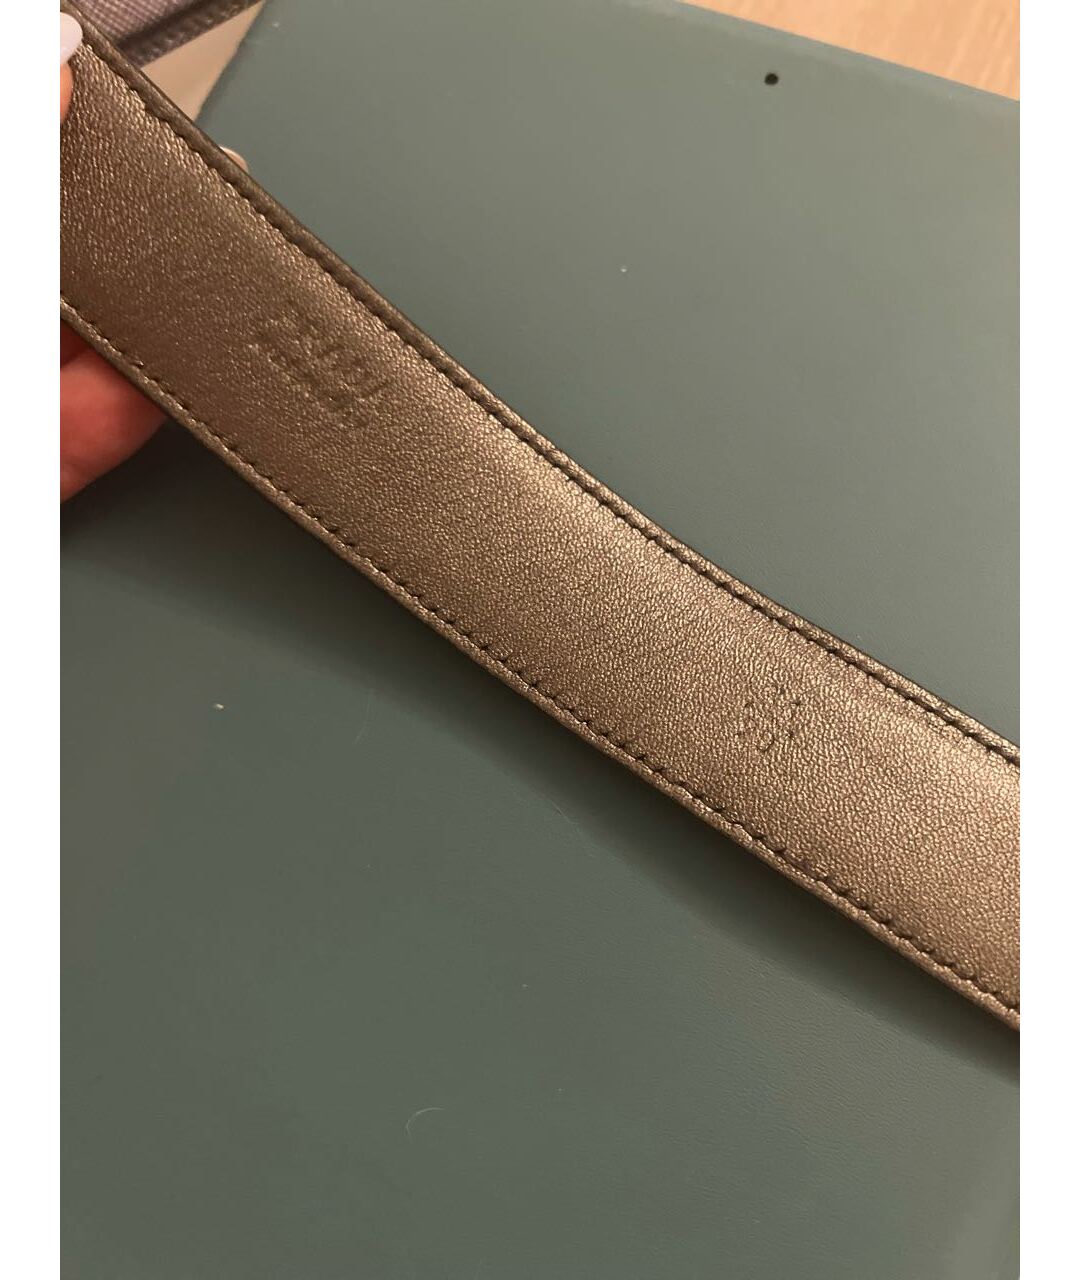 PRADA Серебрянный кожаный ремень, фото 2